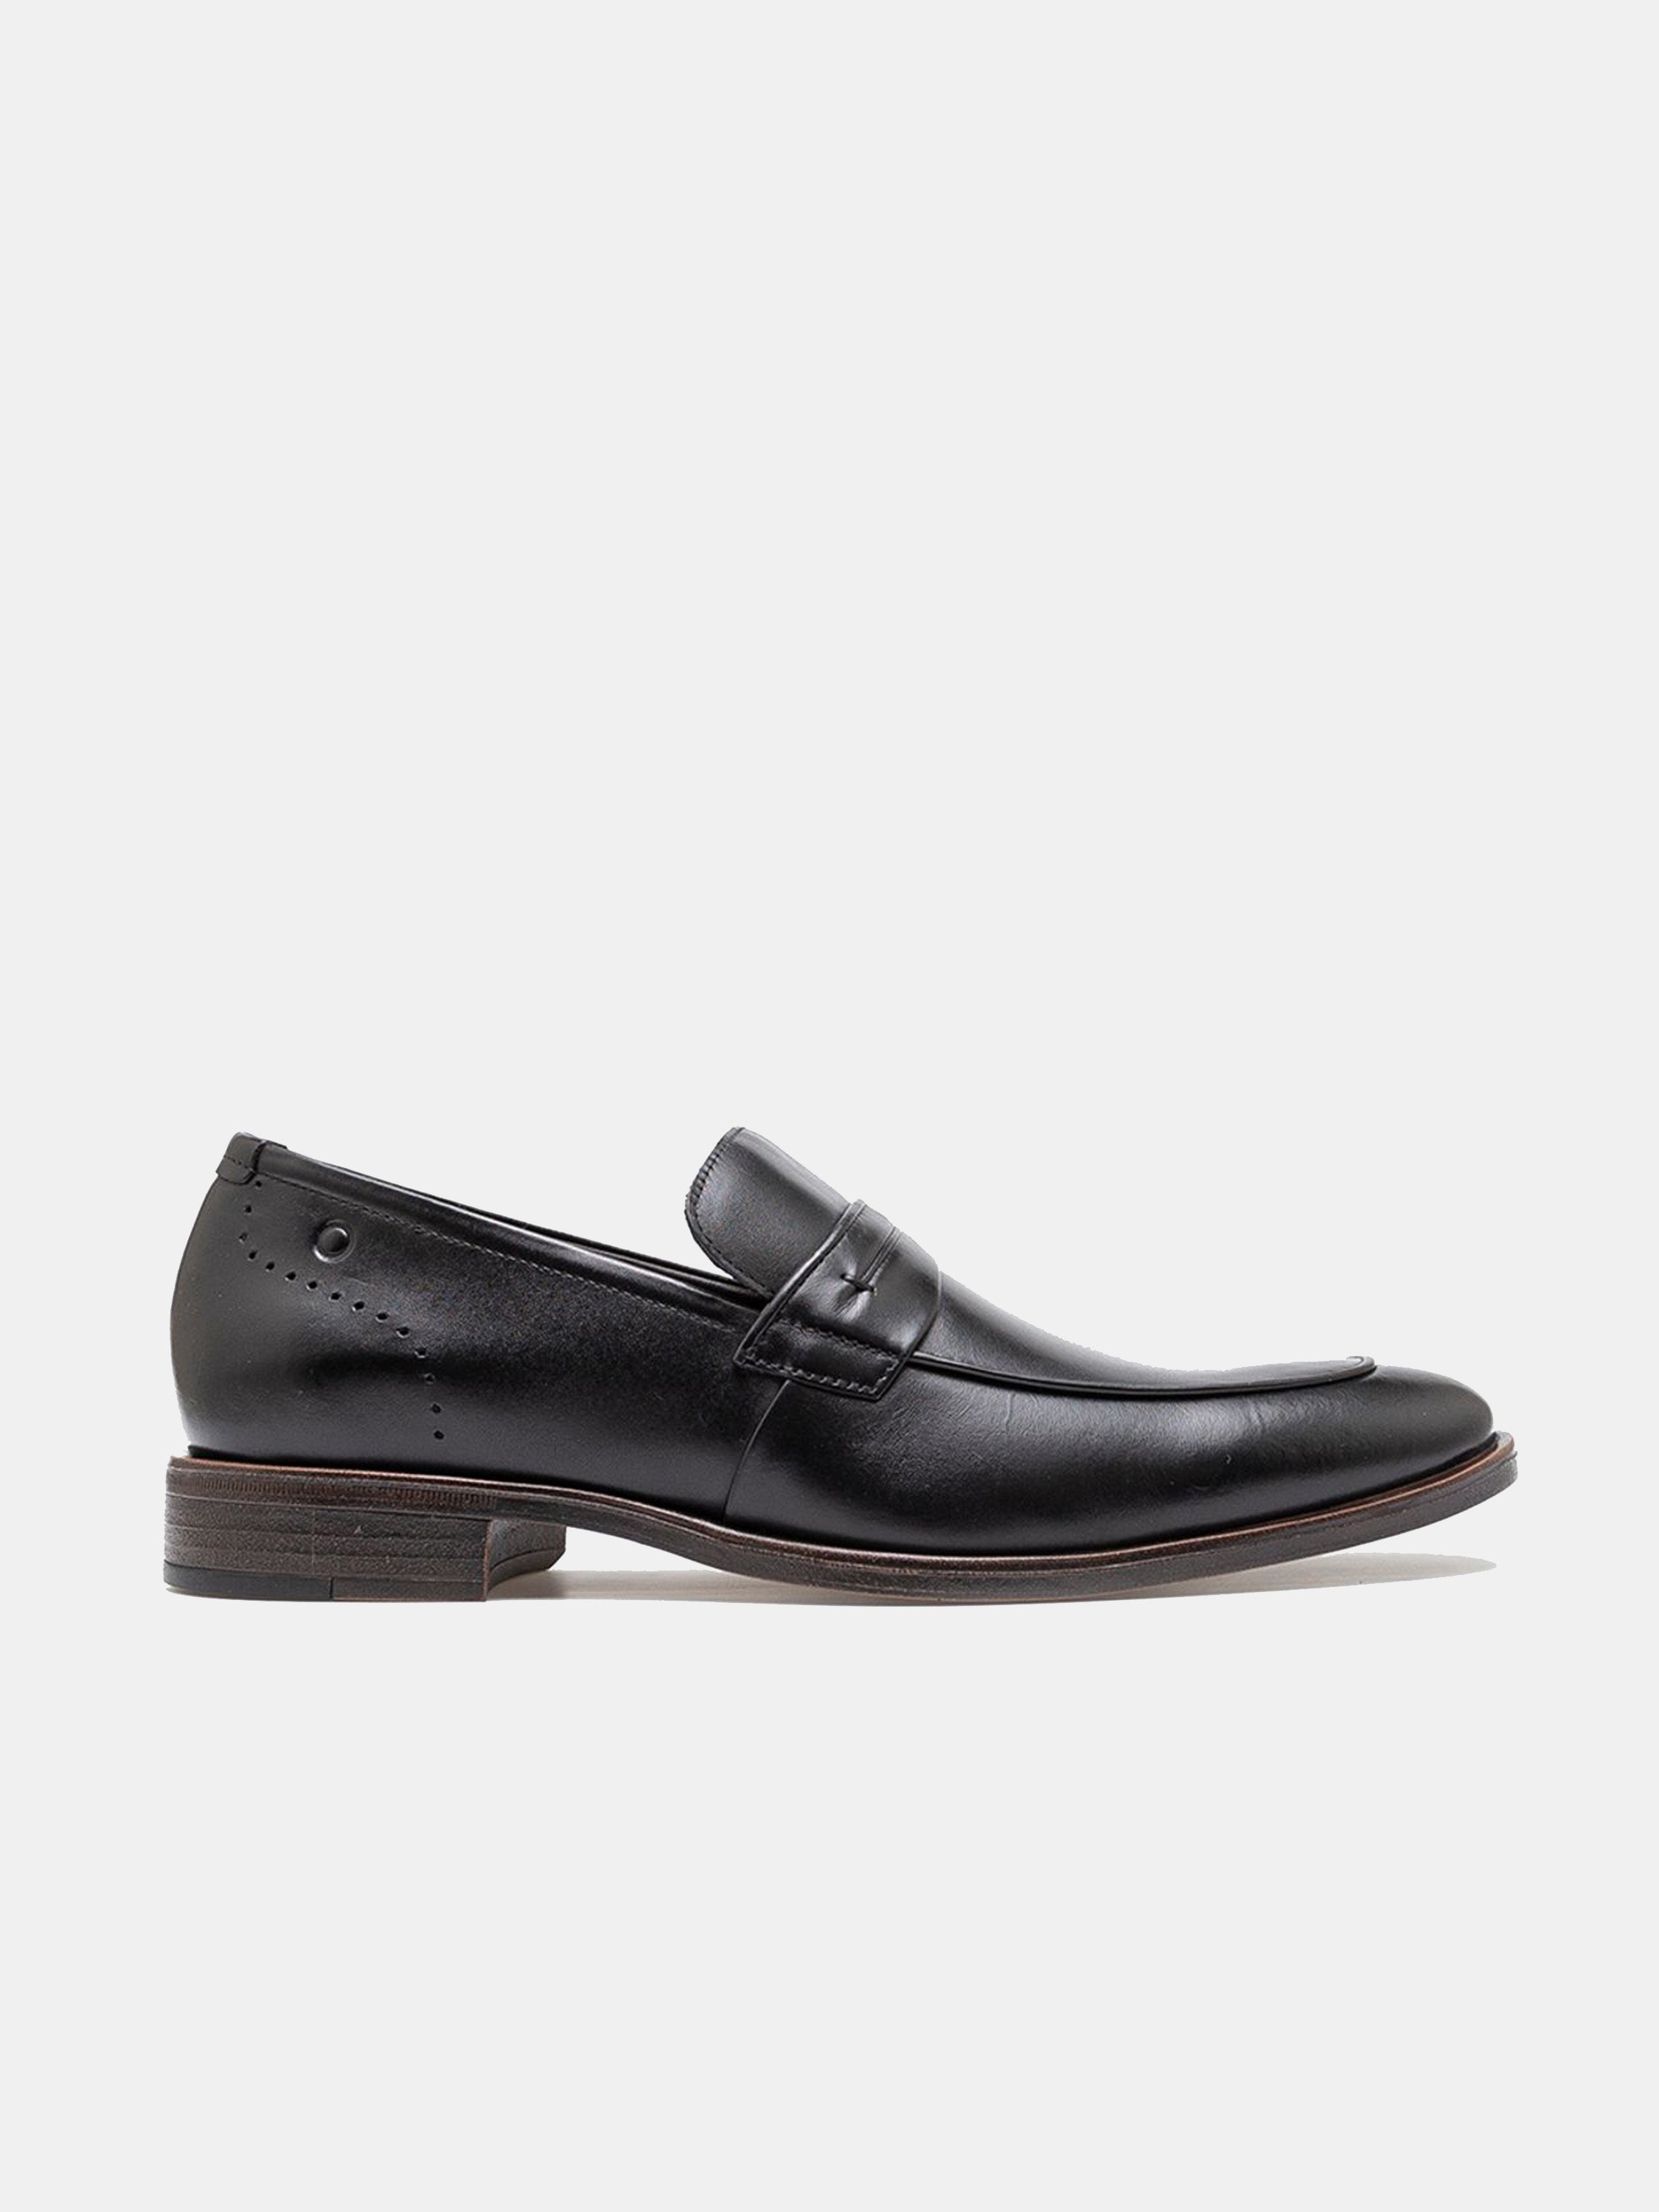 Democrata Men's Smart Comfort Madison Hi-soft 32 Formal Shoes #color_Black